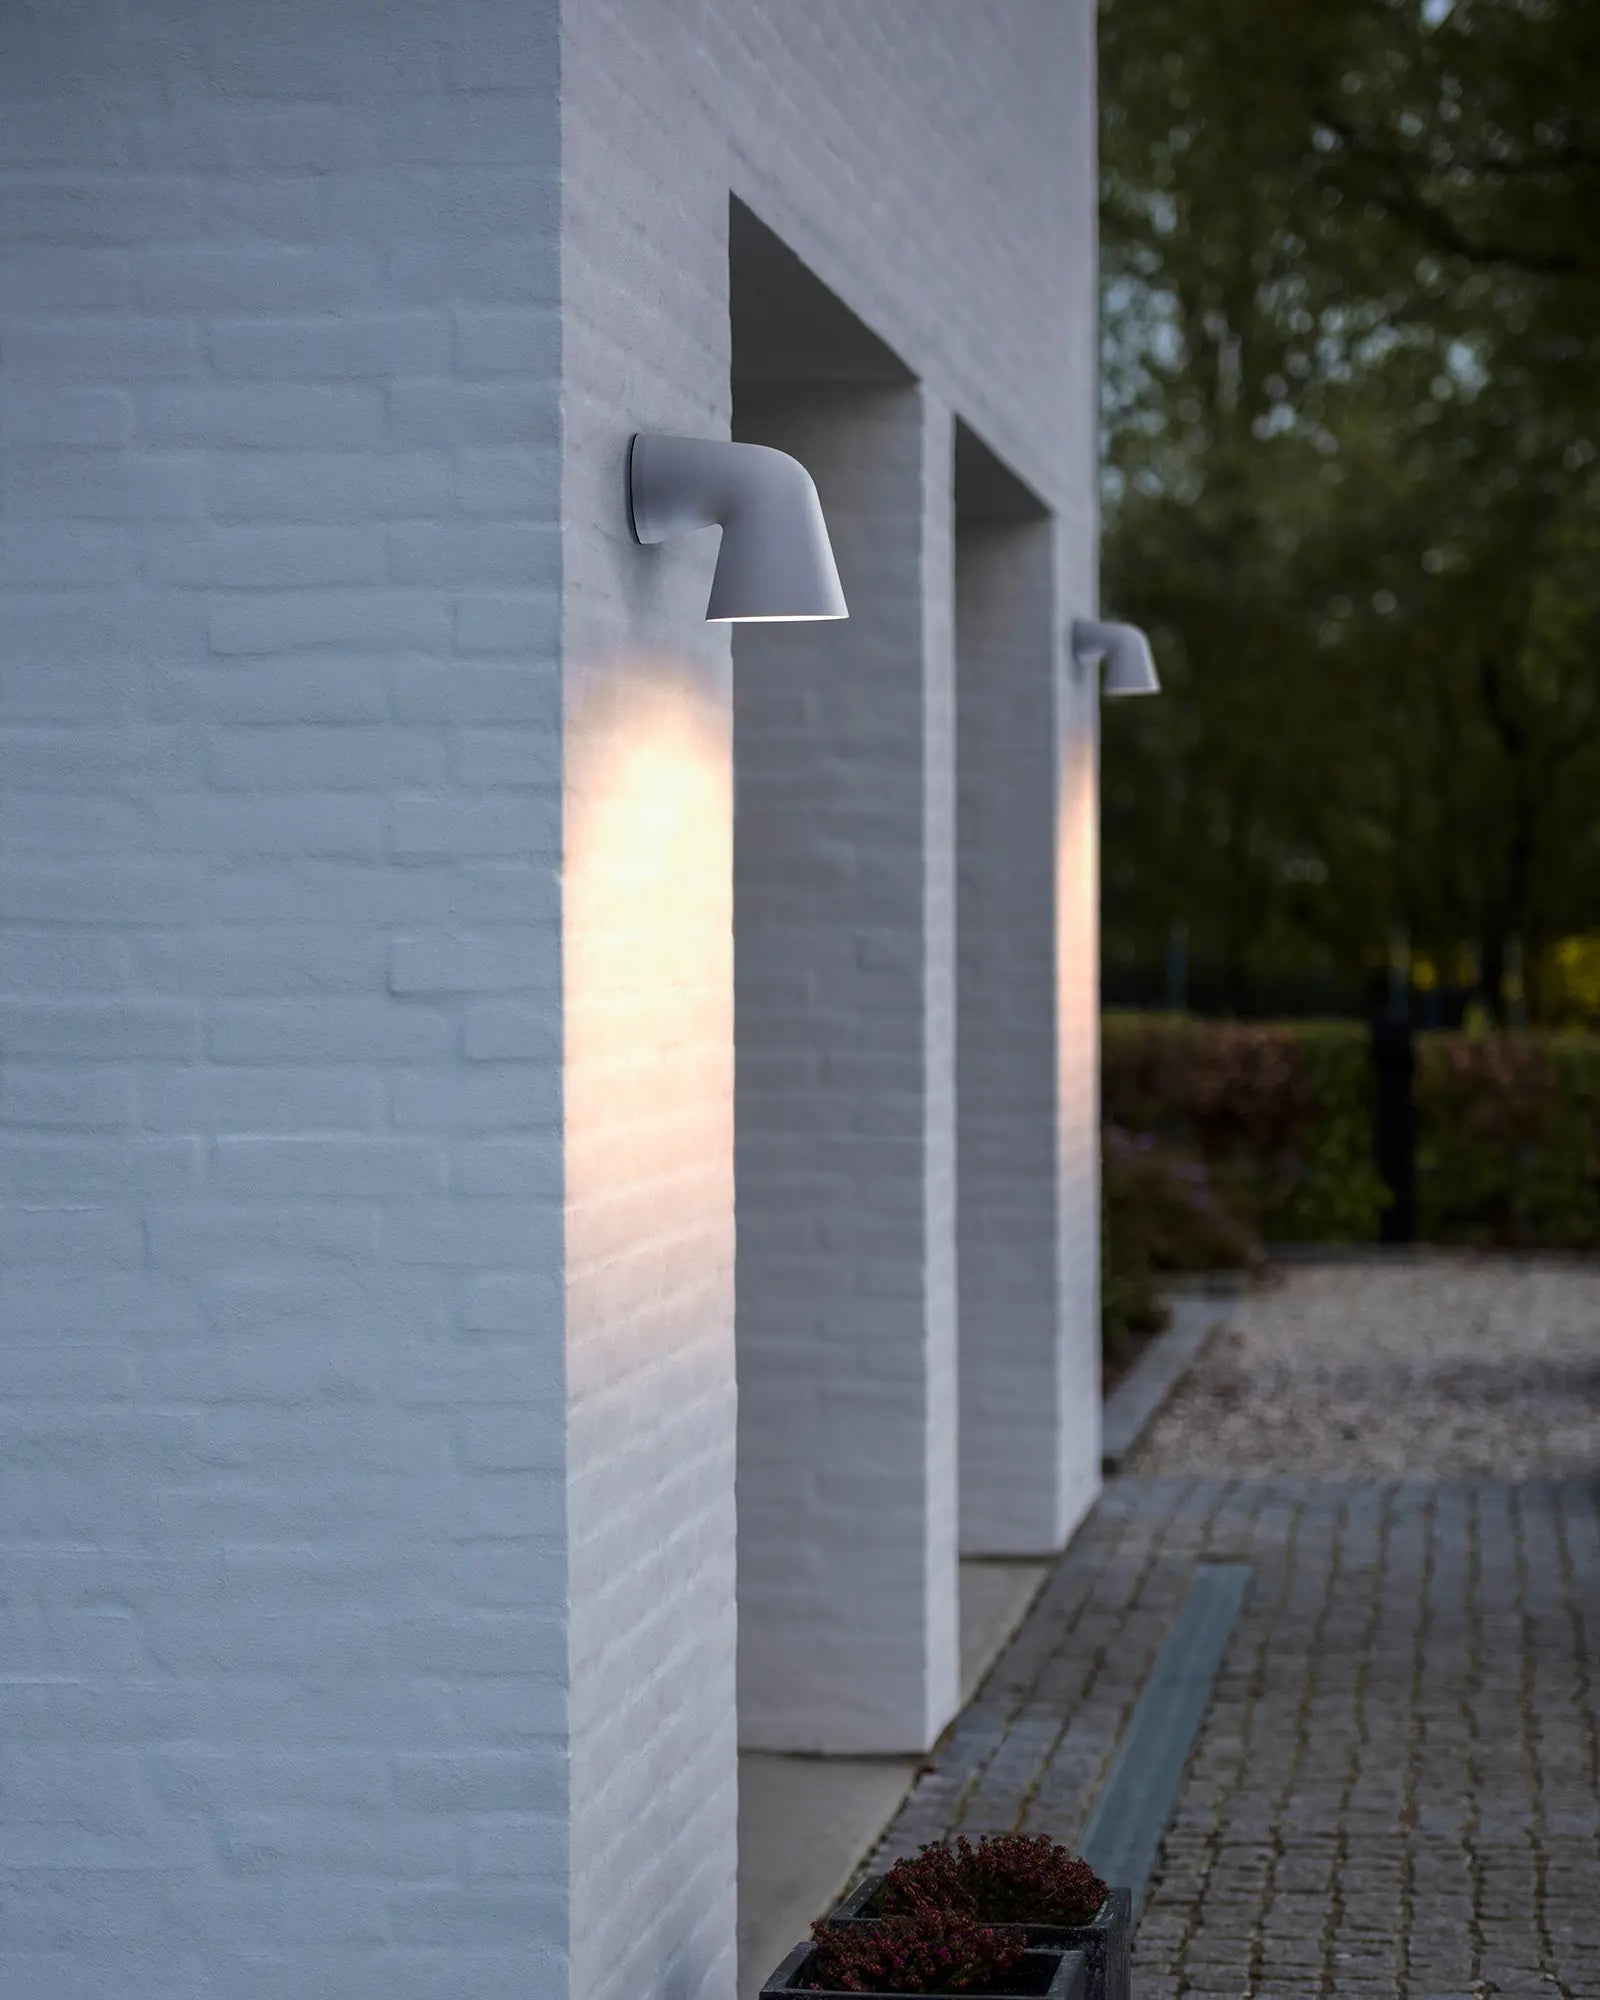 Front single Scandinavian outdoor light near a garage door